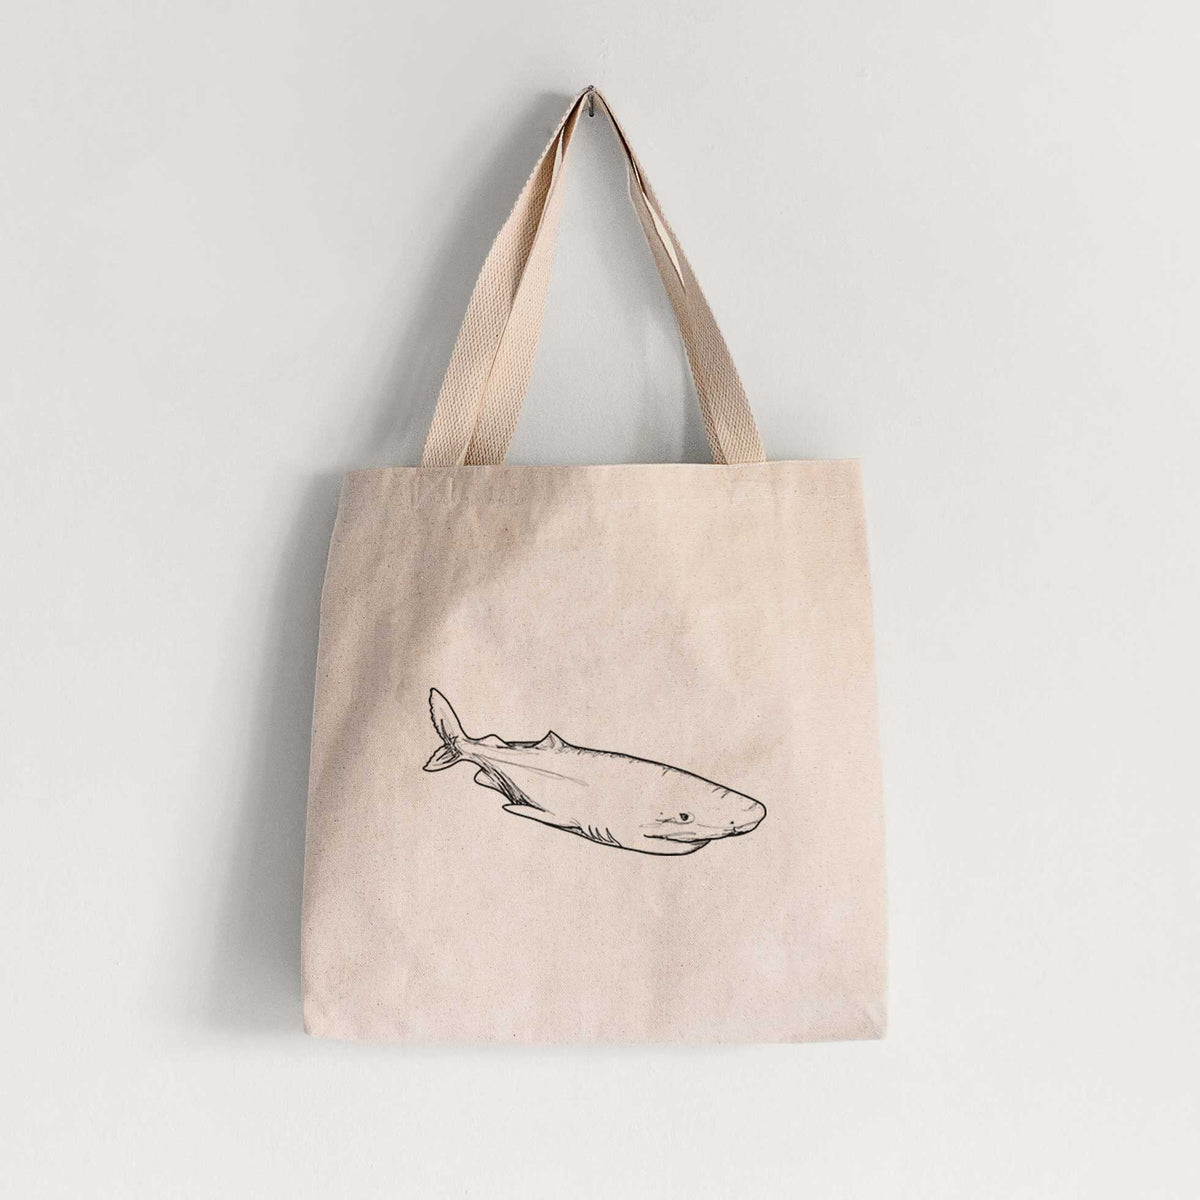 Greenland Shark - Tote Bag